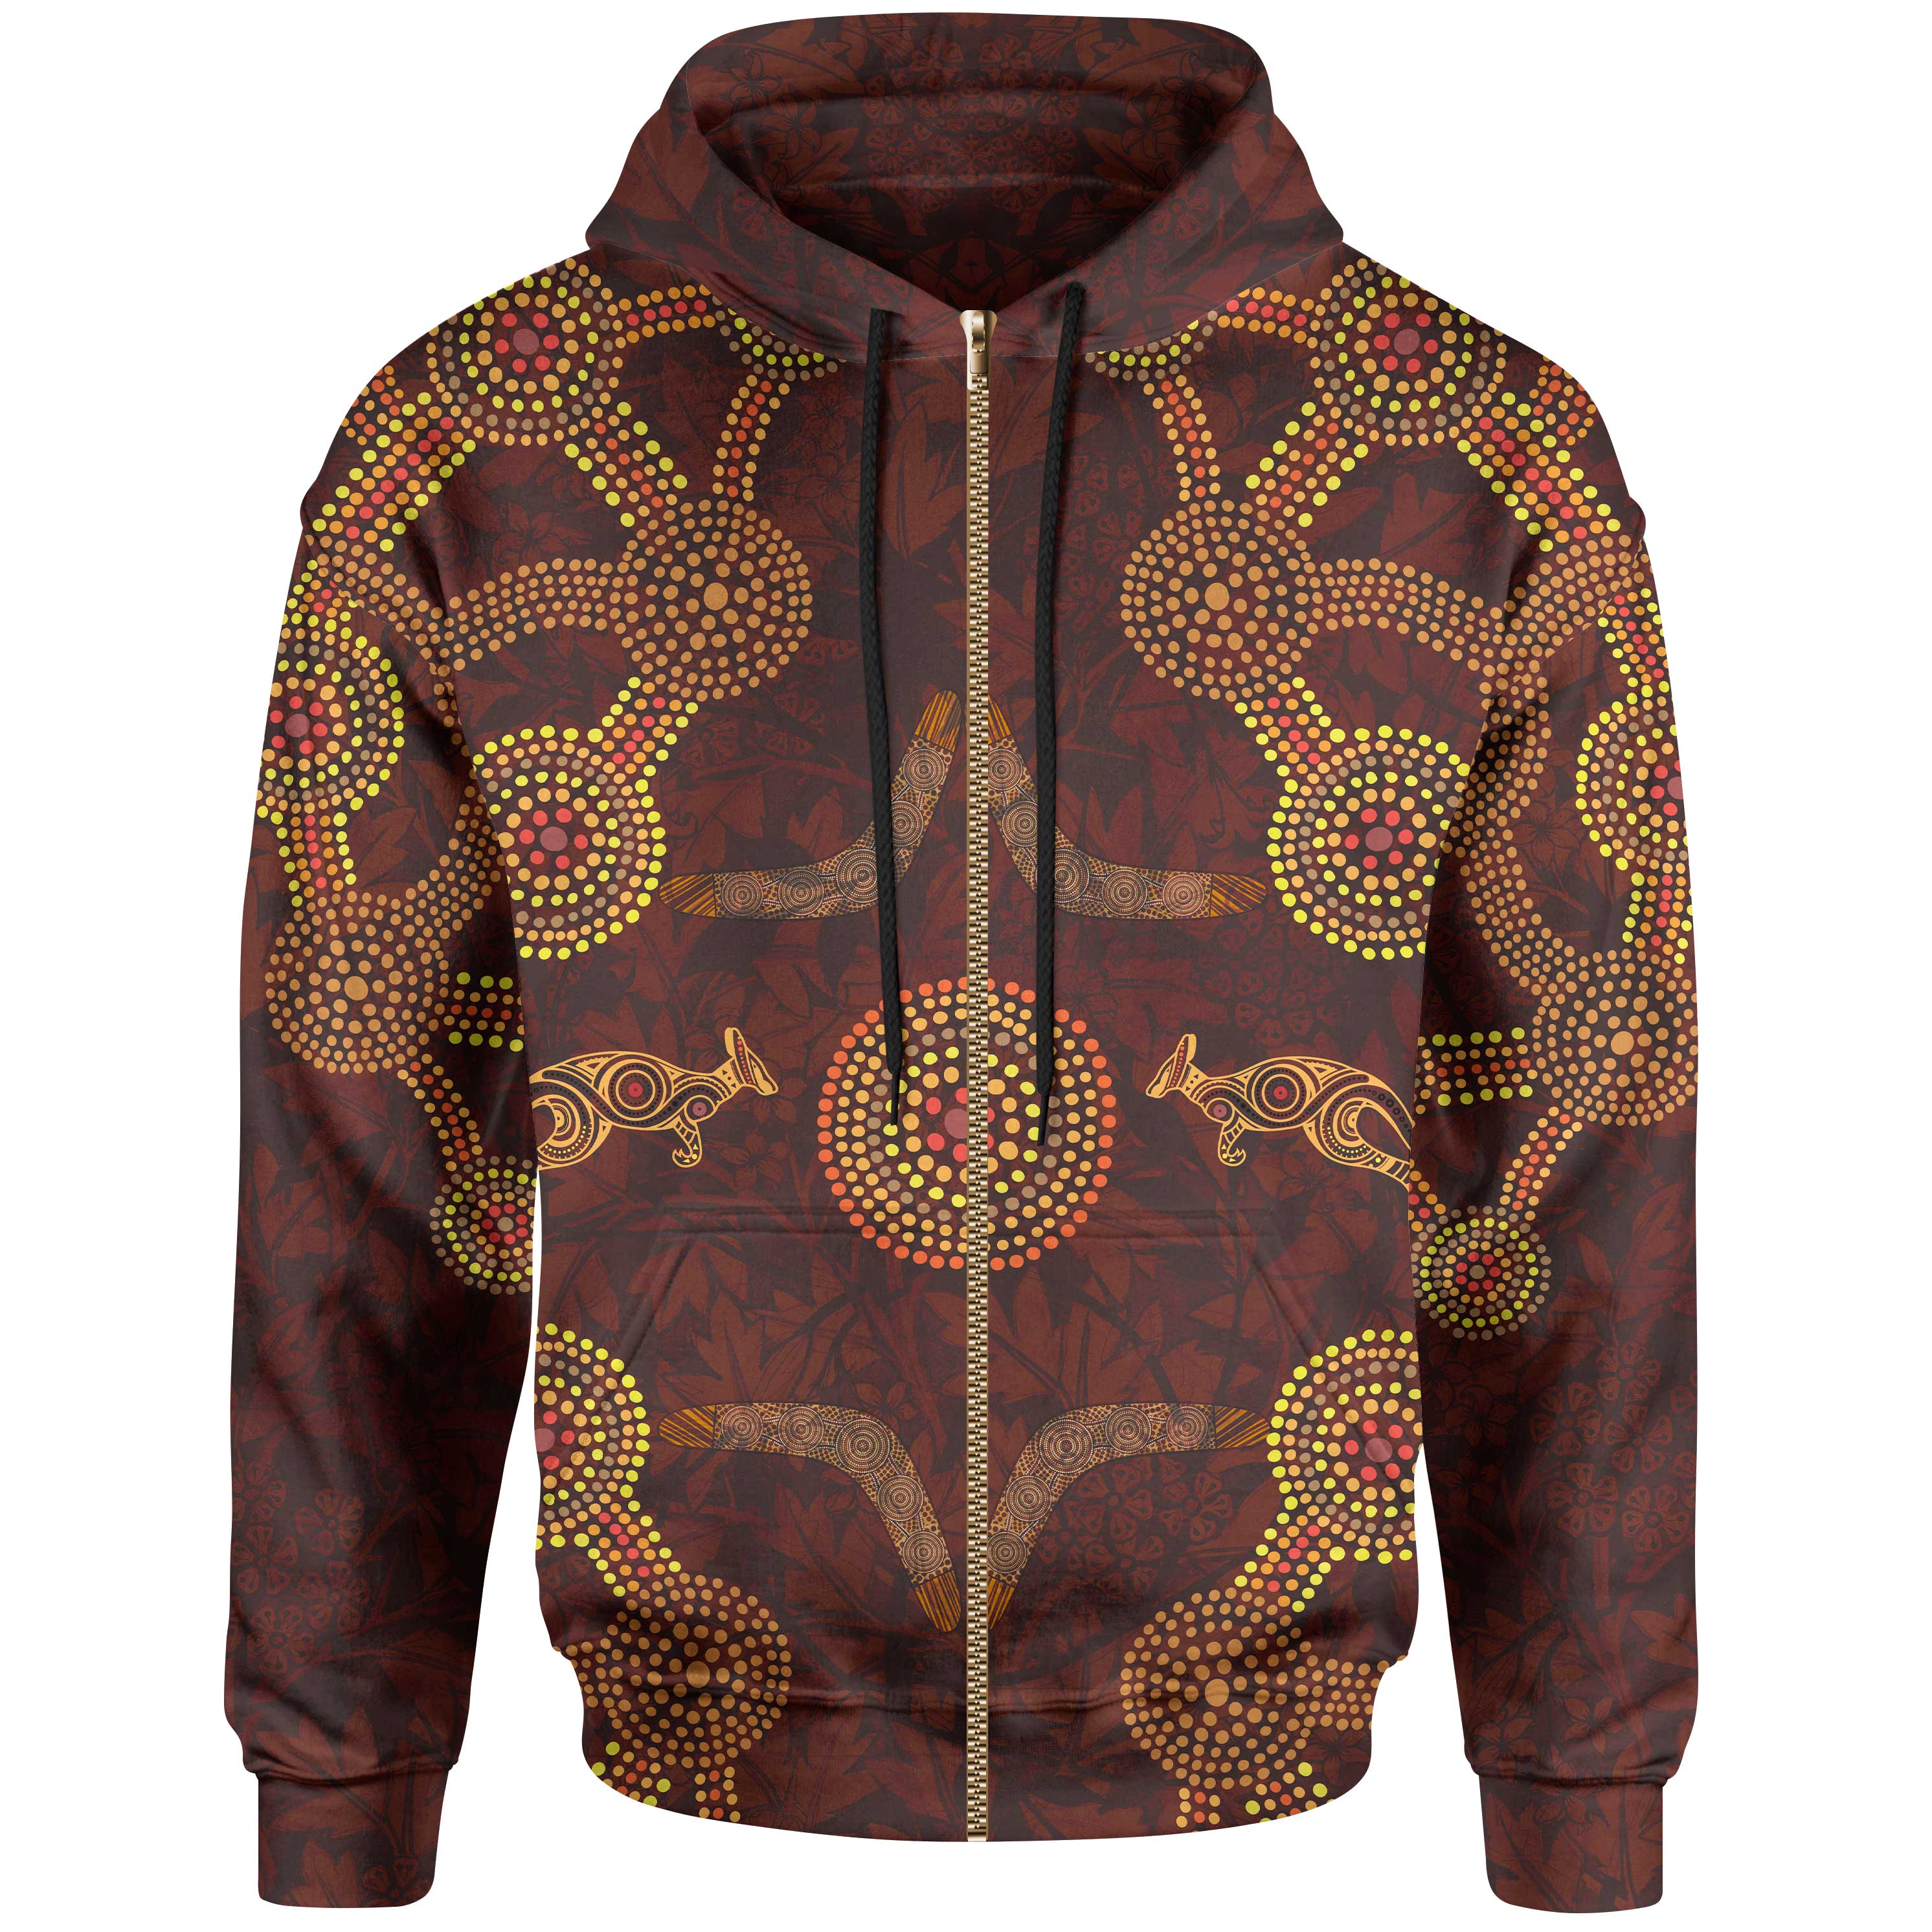 zip-up-hoodie-aboriginal-dot-pattern-boomerang-kangaroo